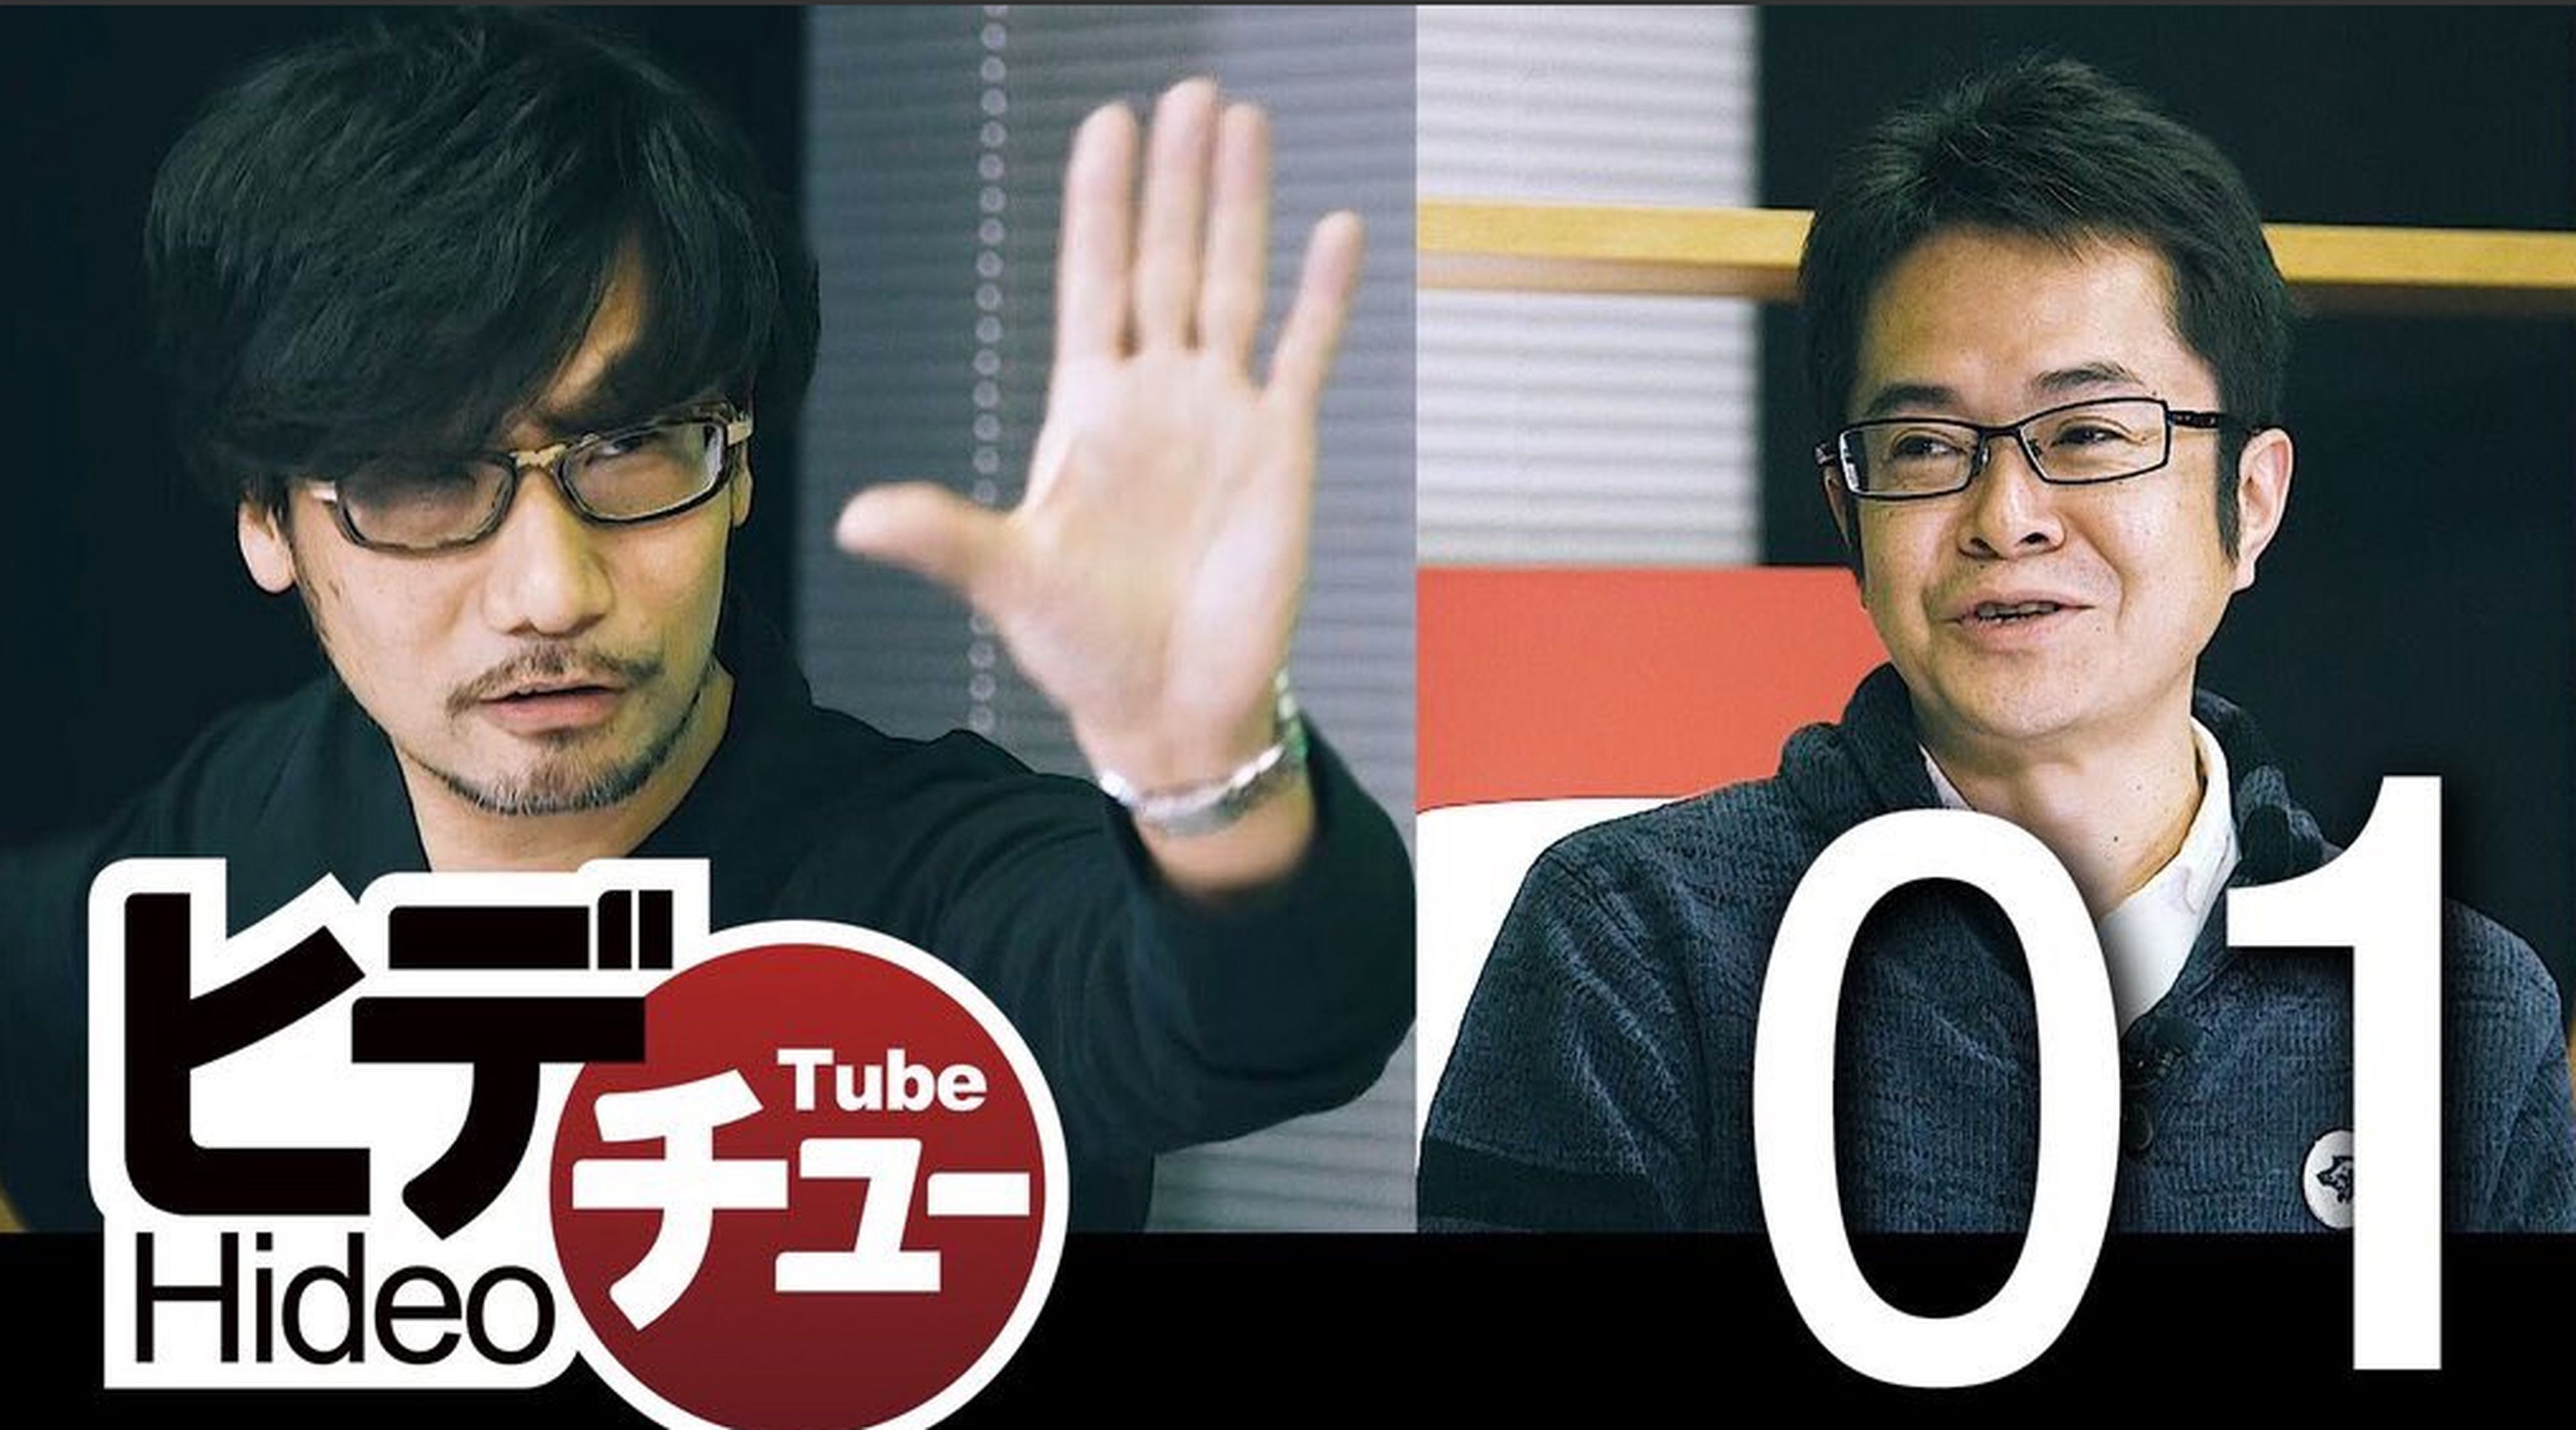 Hideo Kojima publicará mañana su primer Hideo Tube